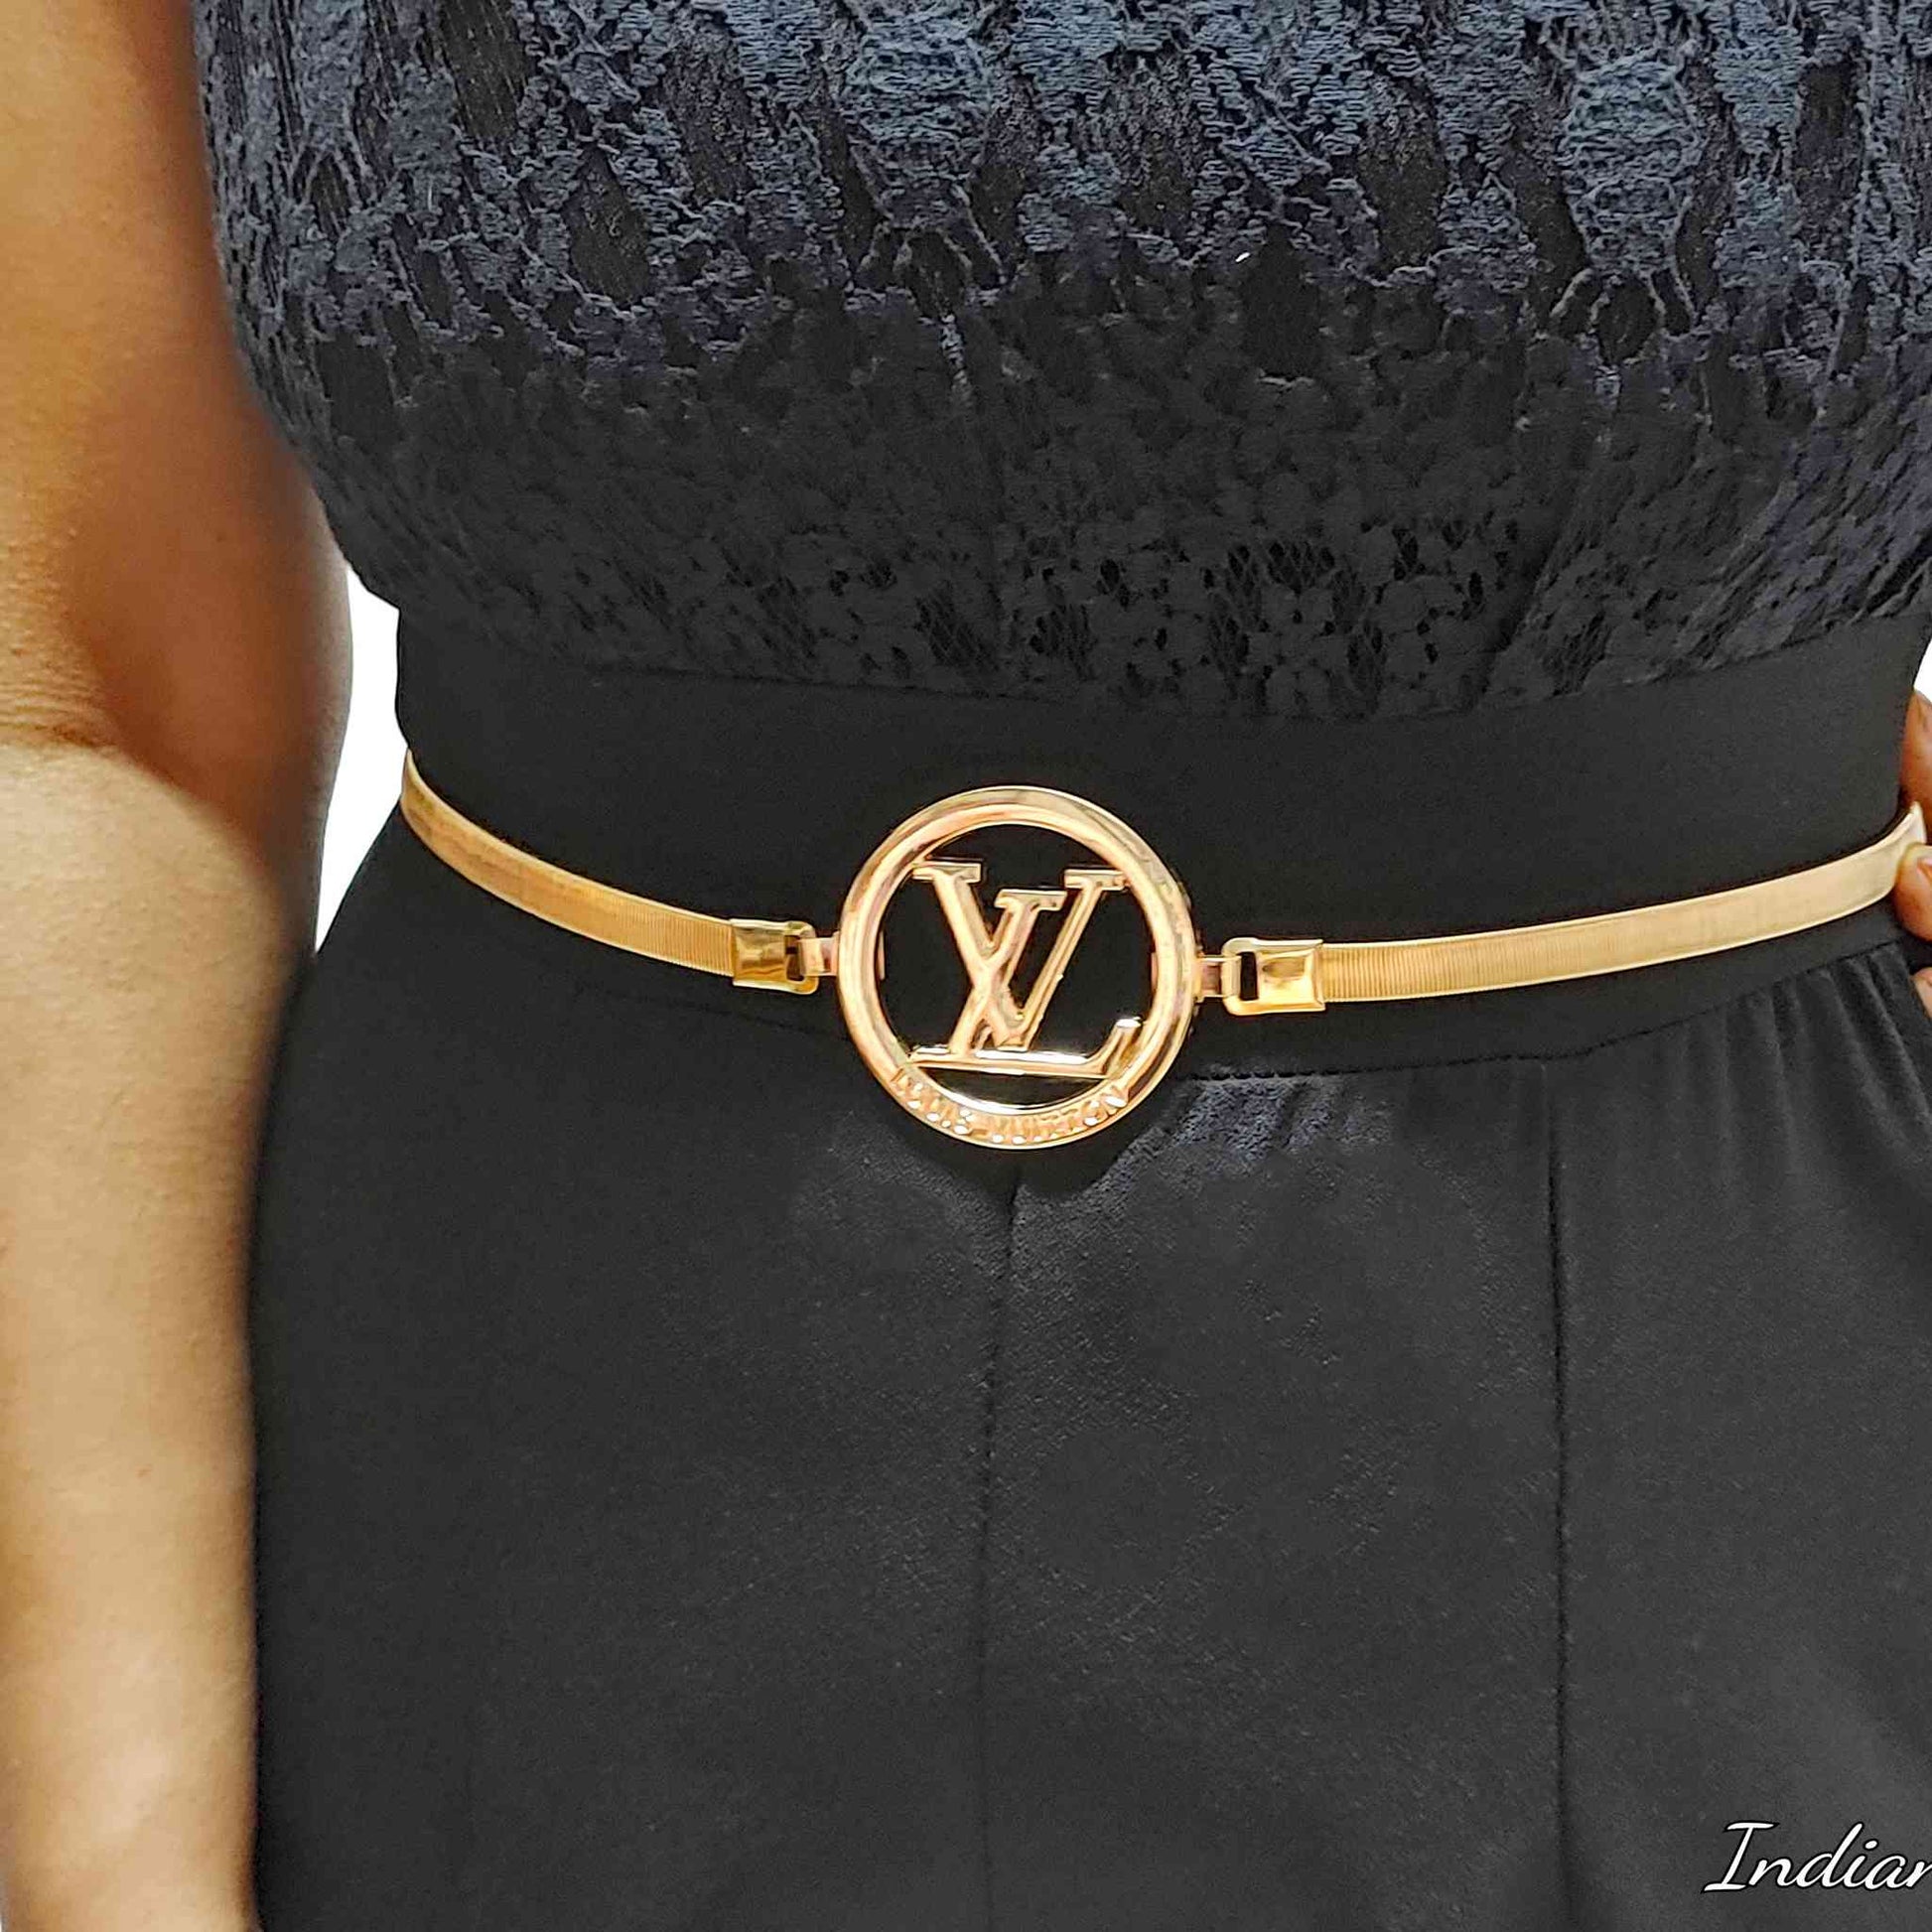 Siza Fashion LV Belt Gray Check Fashion Party Belts For Men